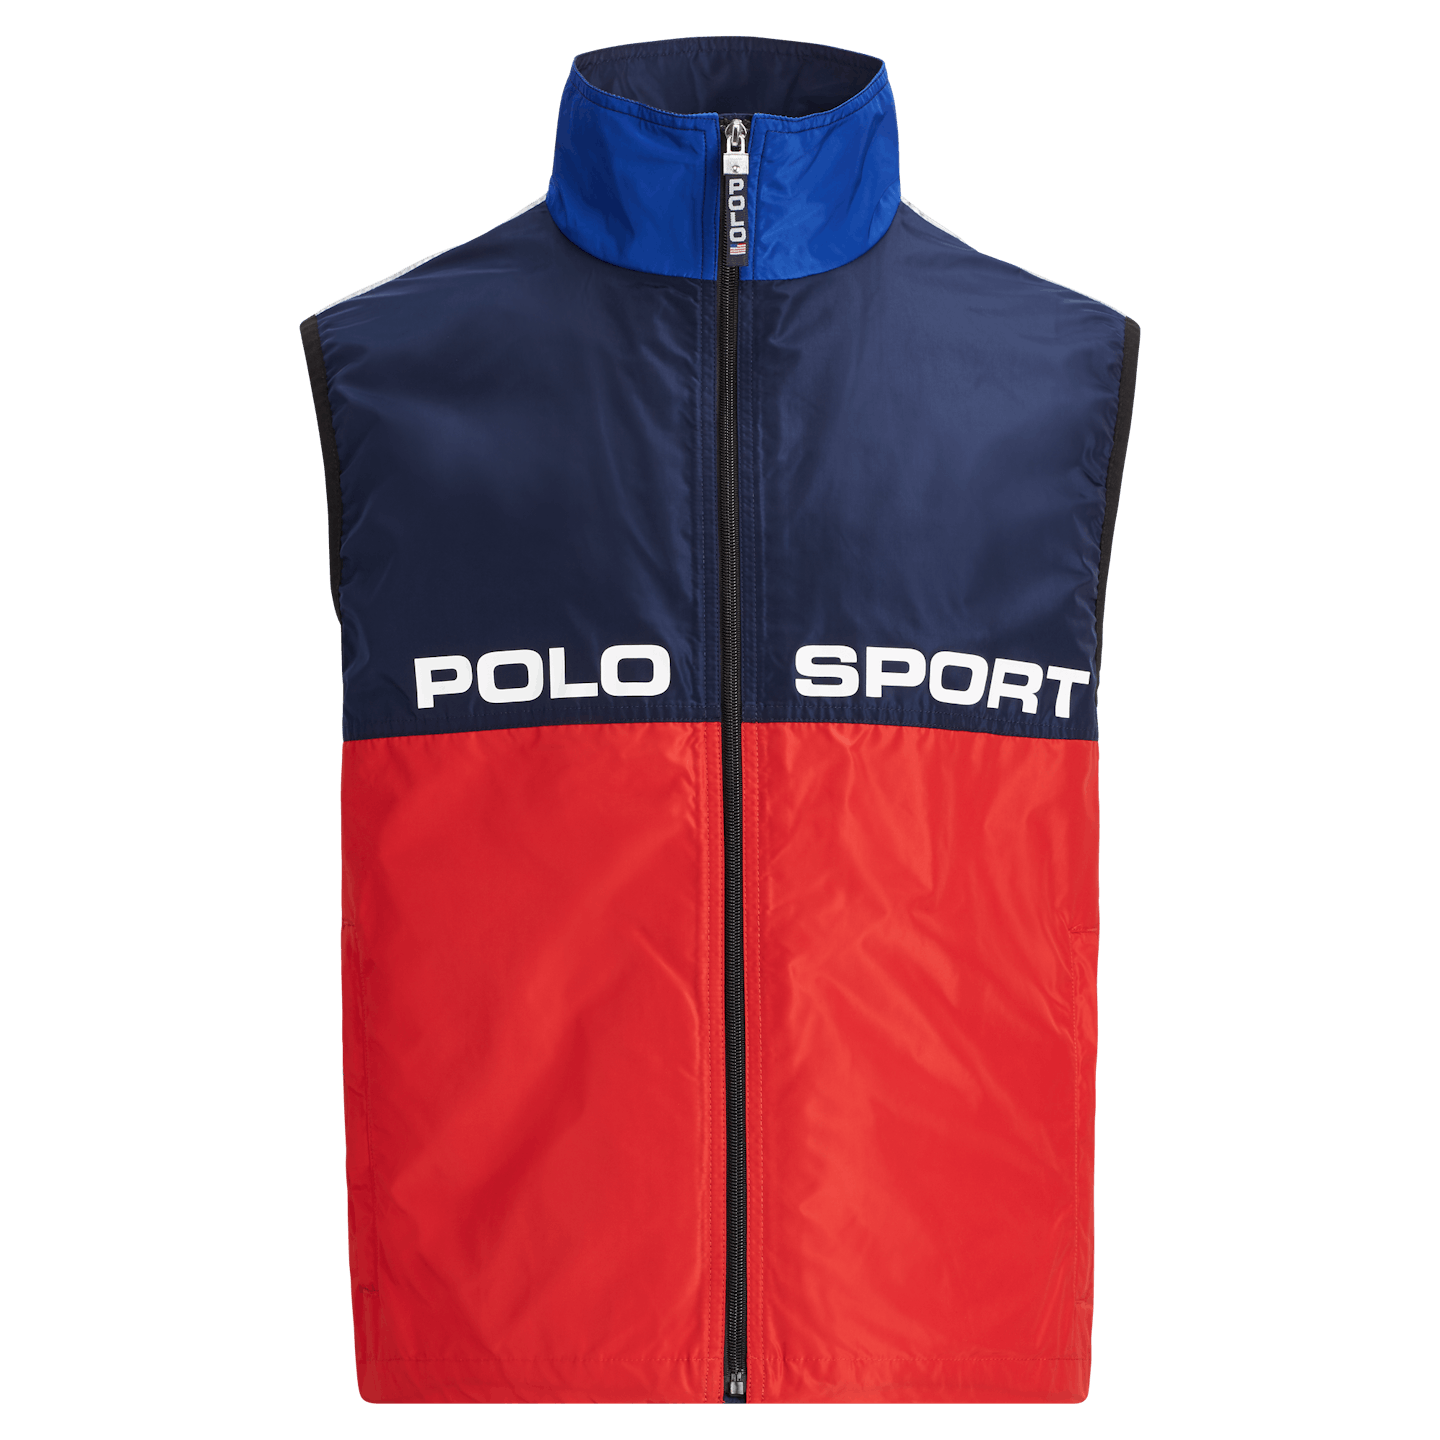 Polo Sport vest